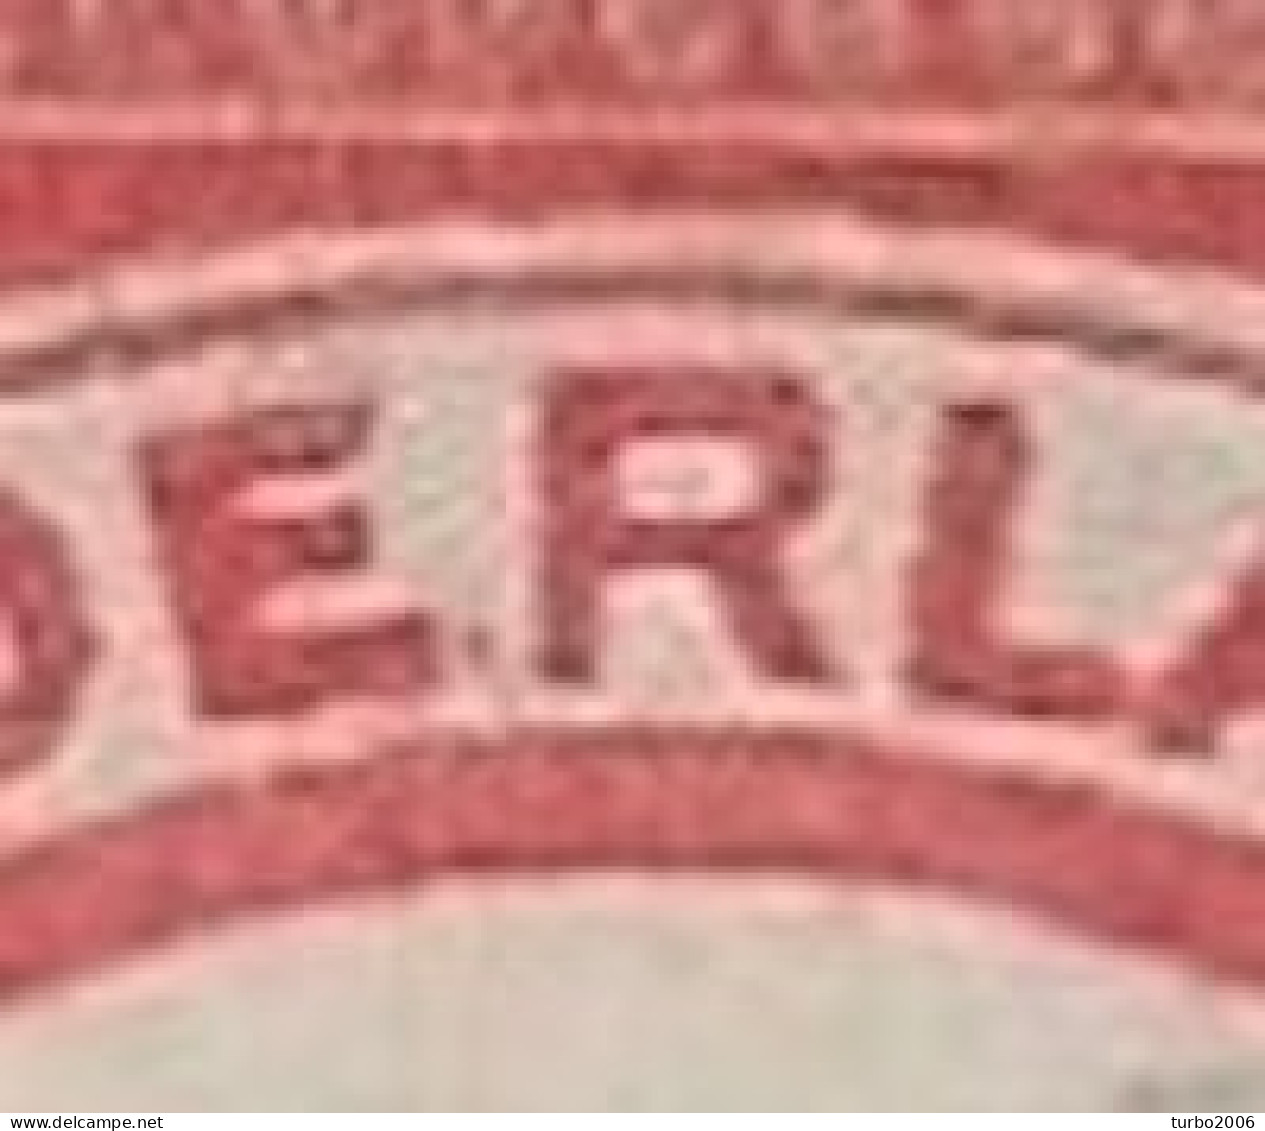 Plaatfout Rood Krasje Tussen De E En R Van NedERland In 1921-22 Cijferzegels 12½ Cent Rood NVPH 108 PM 1 - Errors & Oddities